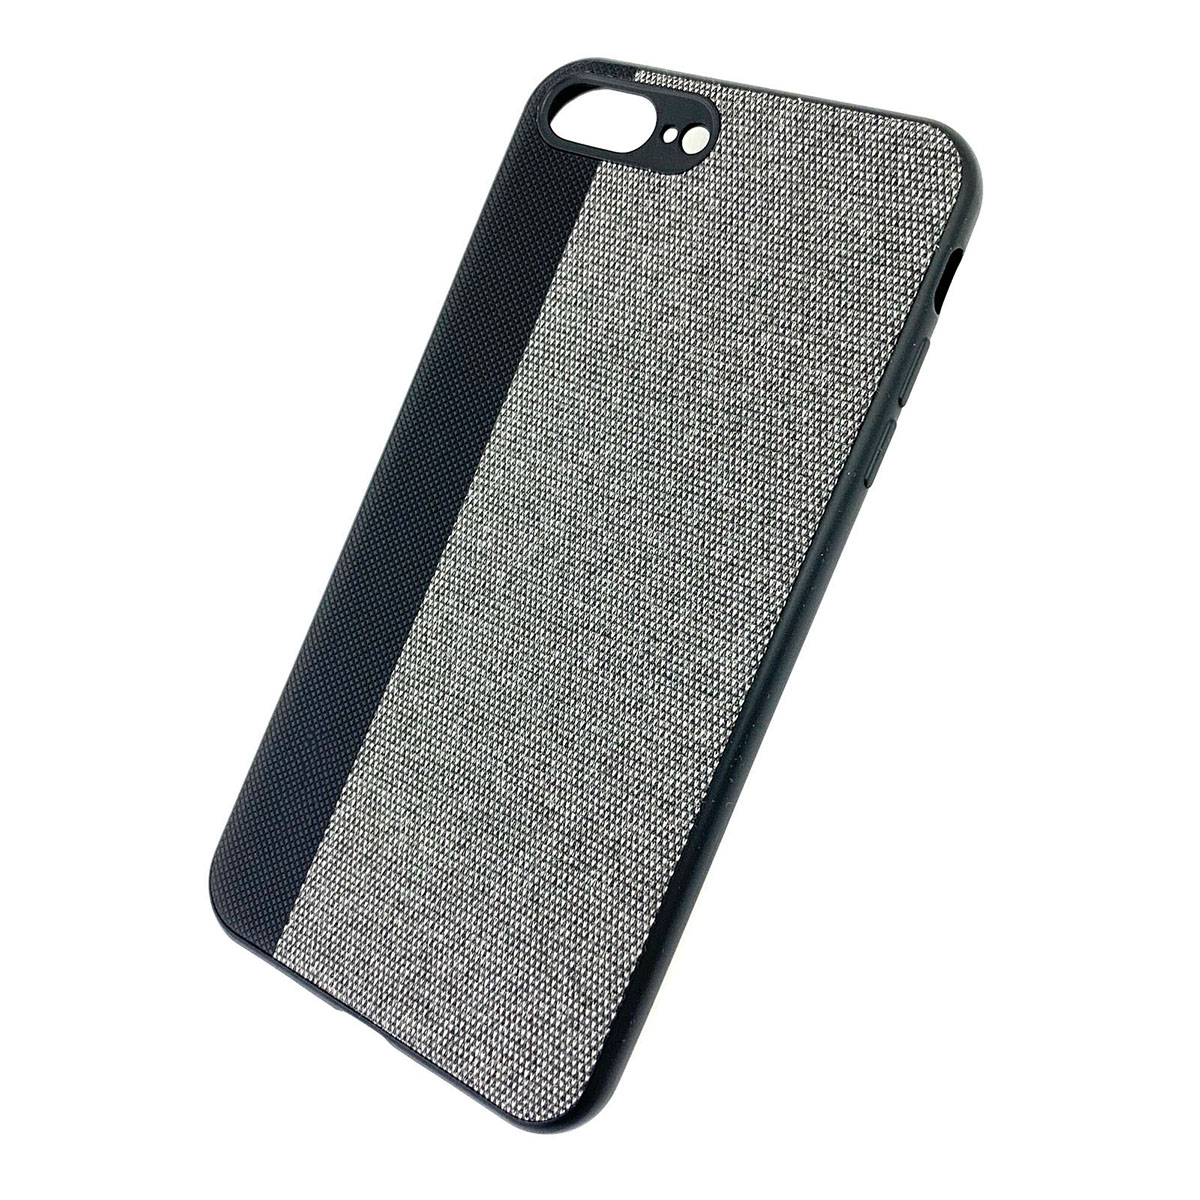 Чехол накладка для APPLE iPhone 7 Plus, 8 Plus, силикон, комбинированная, цвет черно серый.